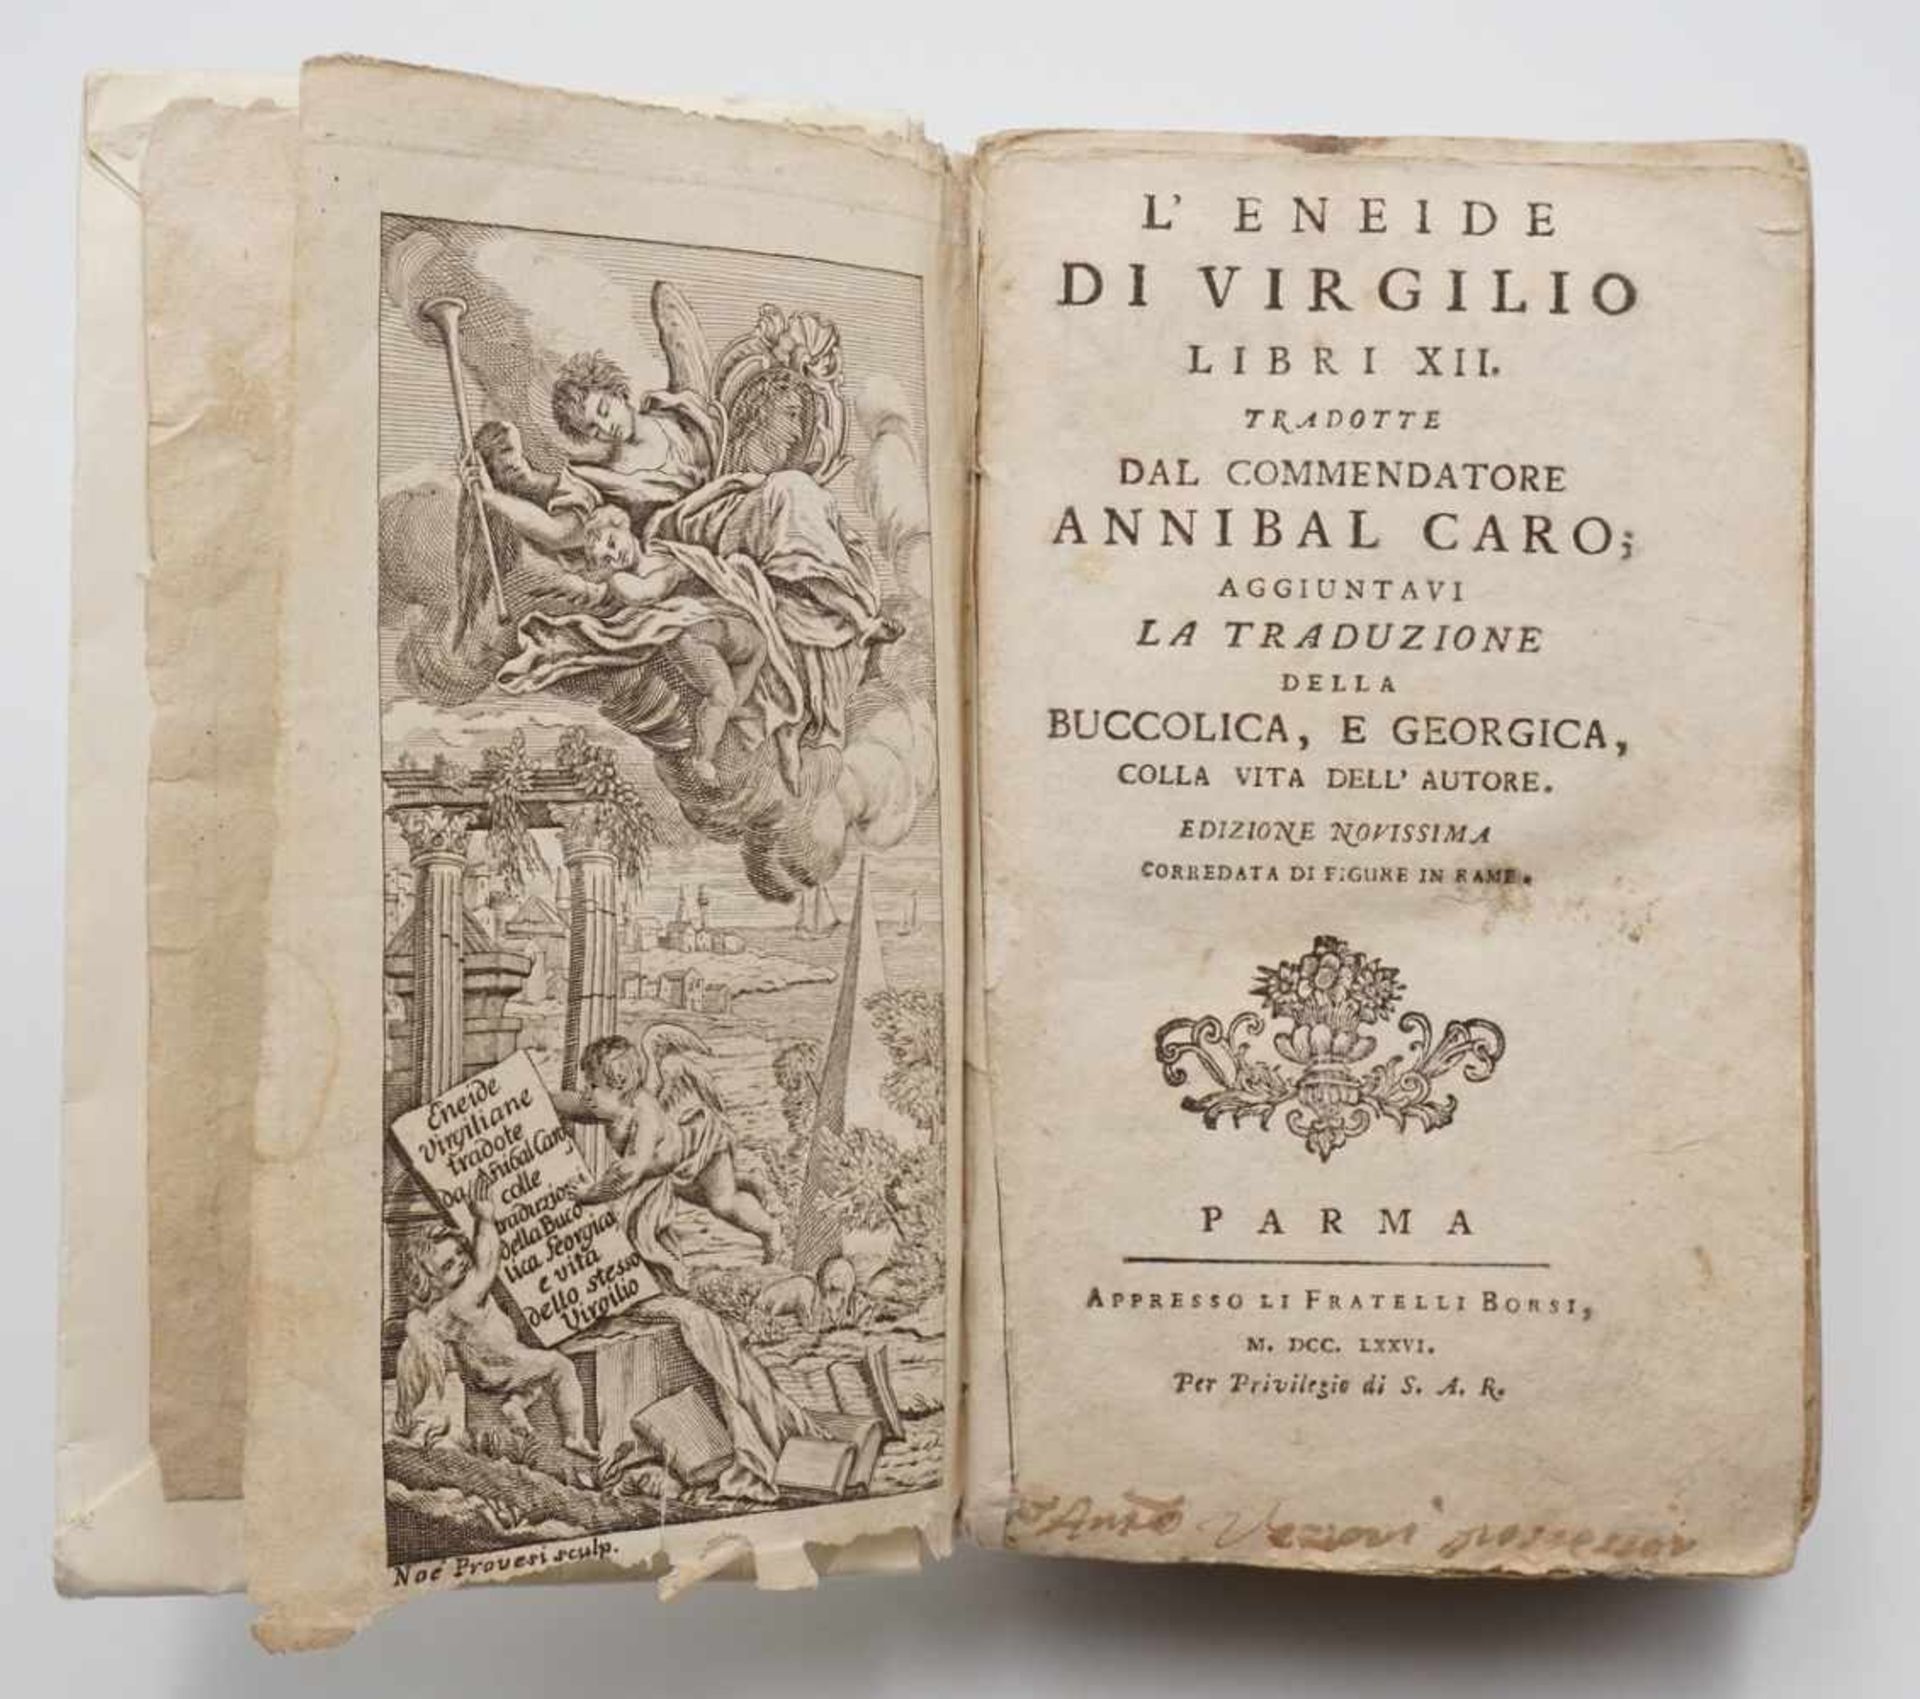 Sechs Bücher von 1633 bis 18141) "Catechismo Ovvero Dottrina Cristiana", 1765, Einband fehlt, 260 - Image 4 of 7